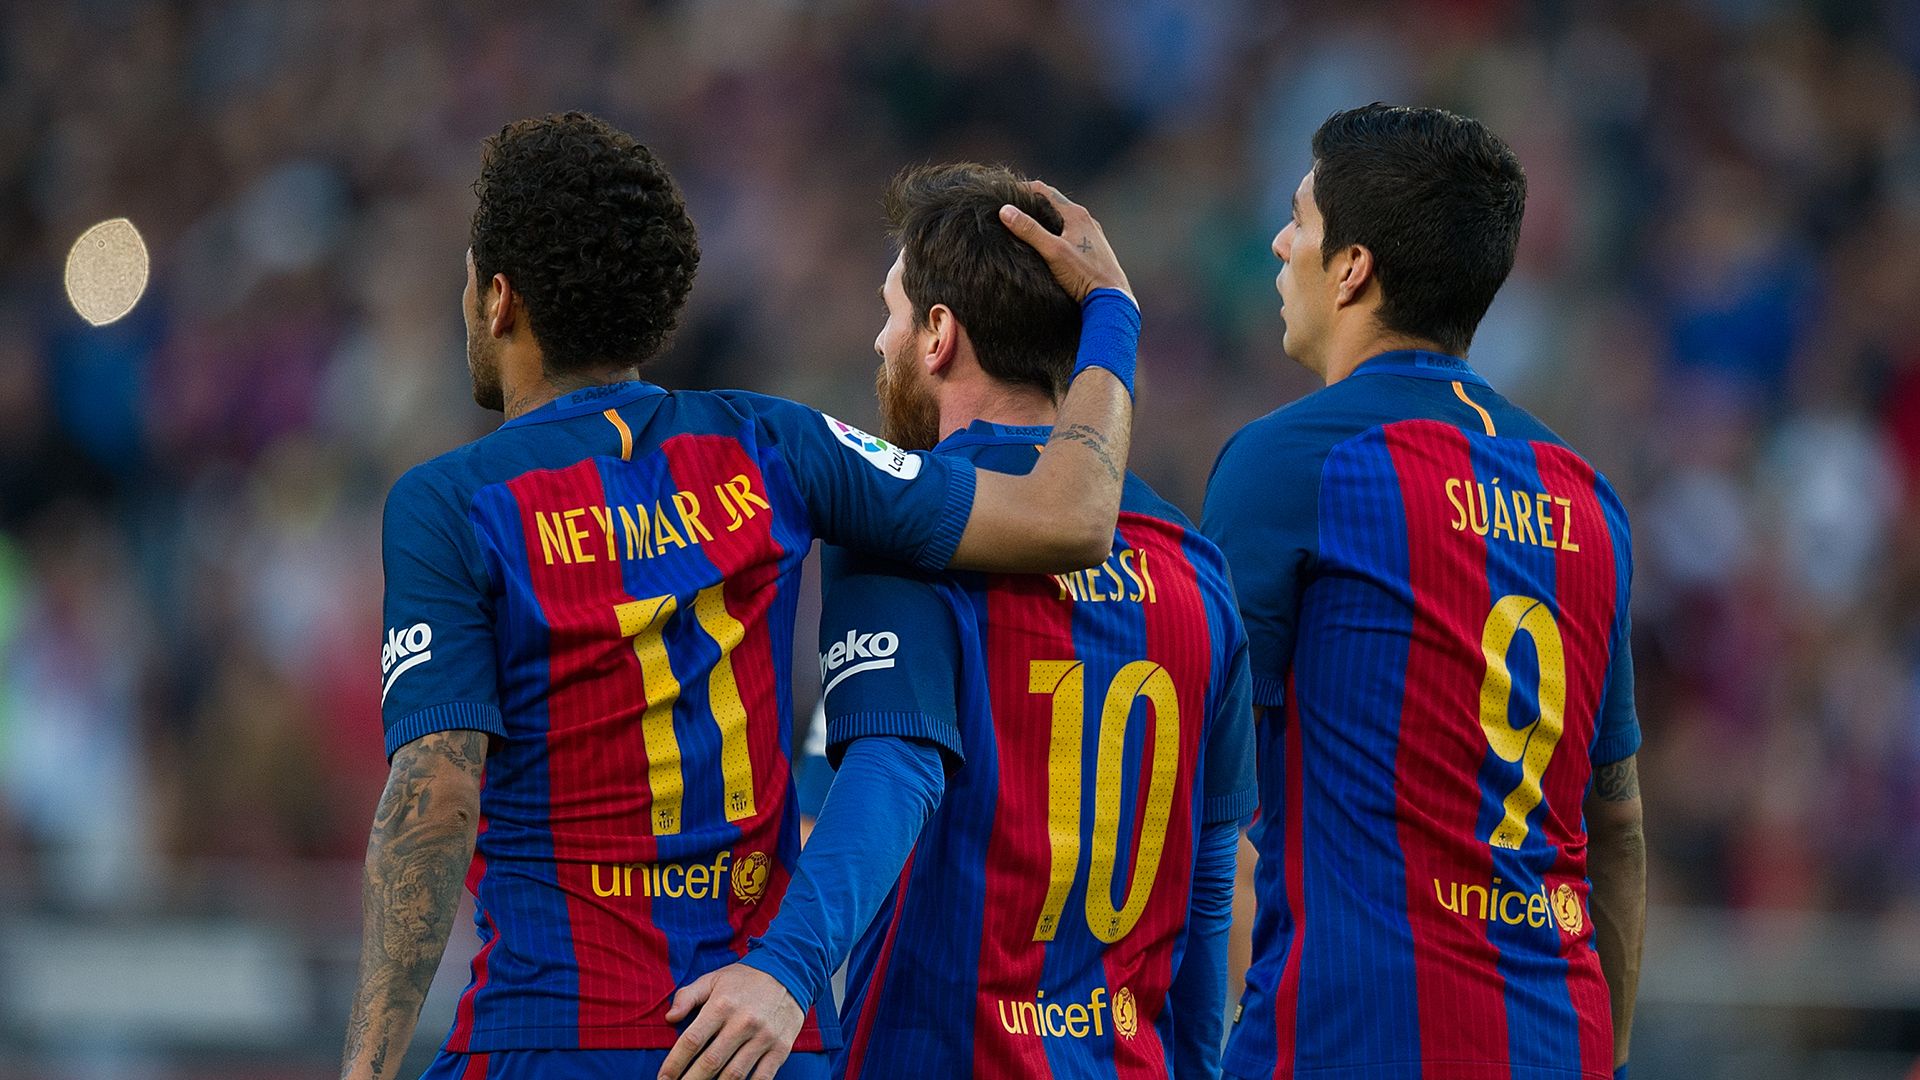 Messi, Suarez and Neymar gave Barcelona .goal.com